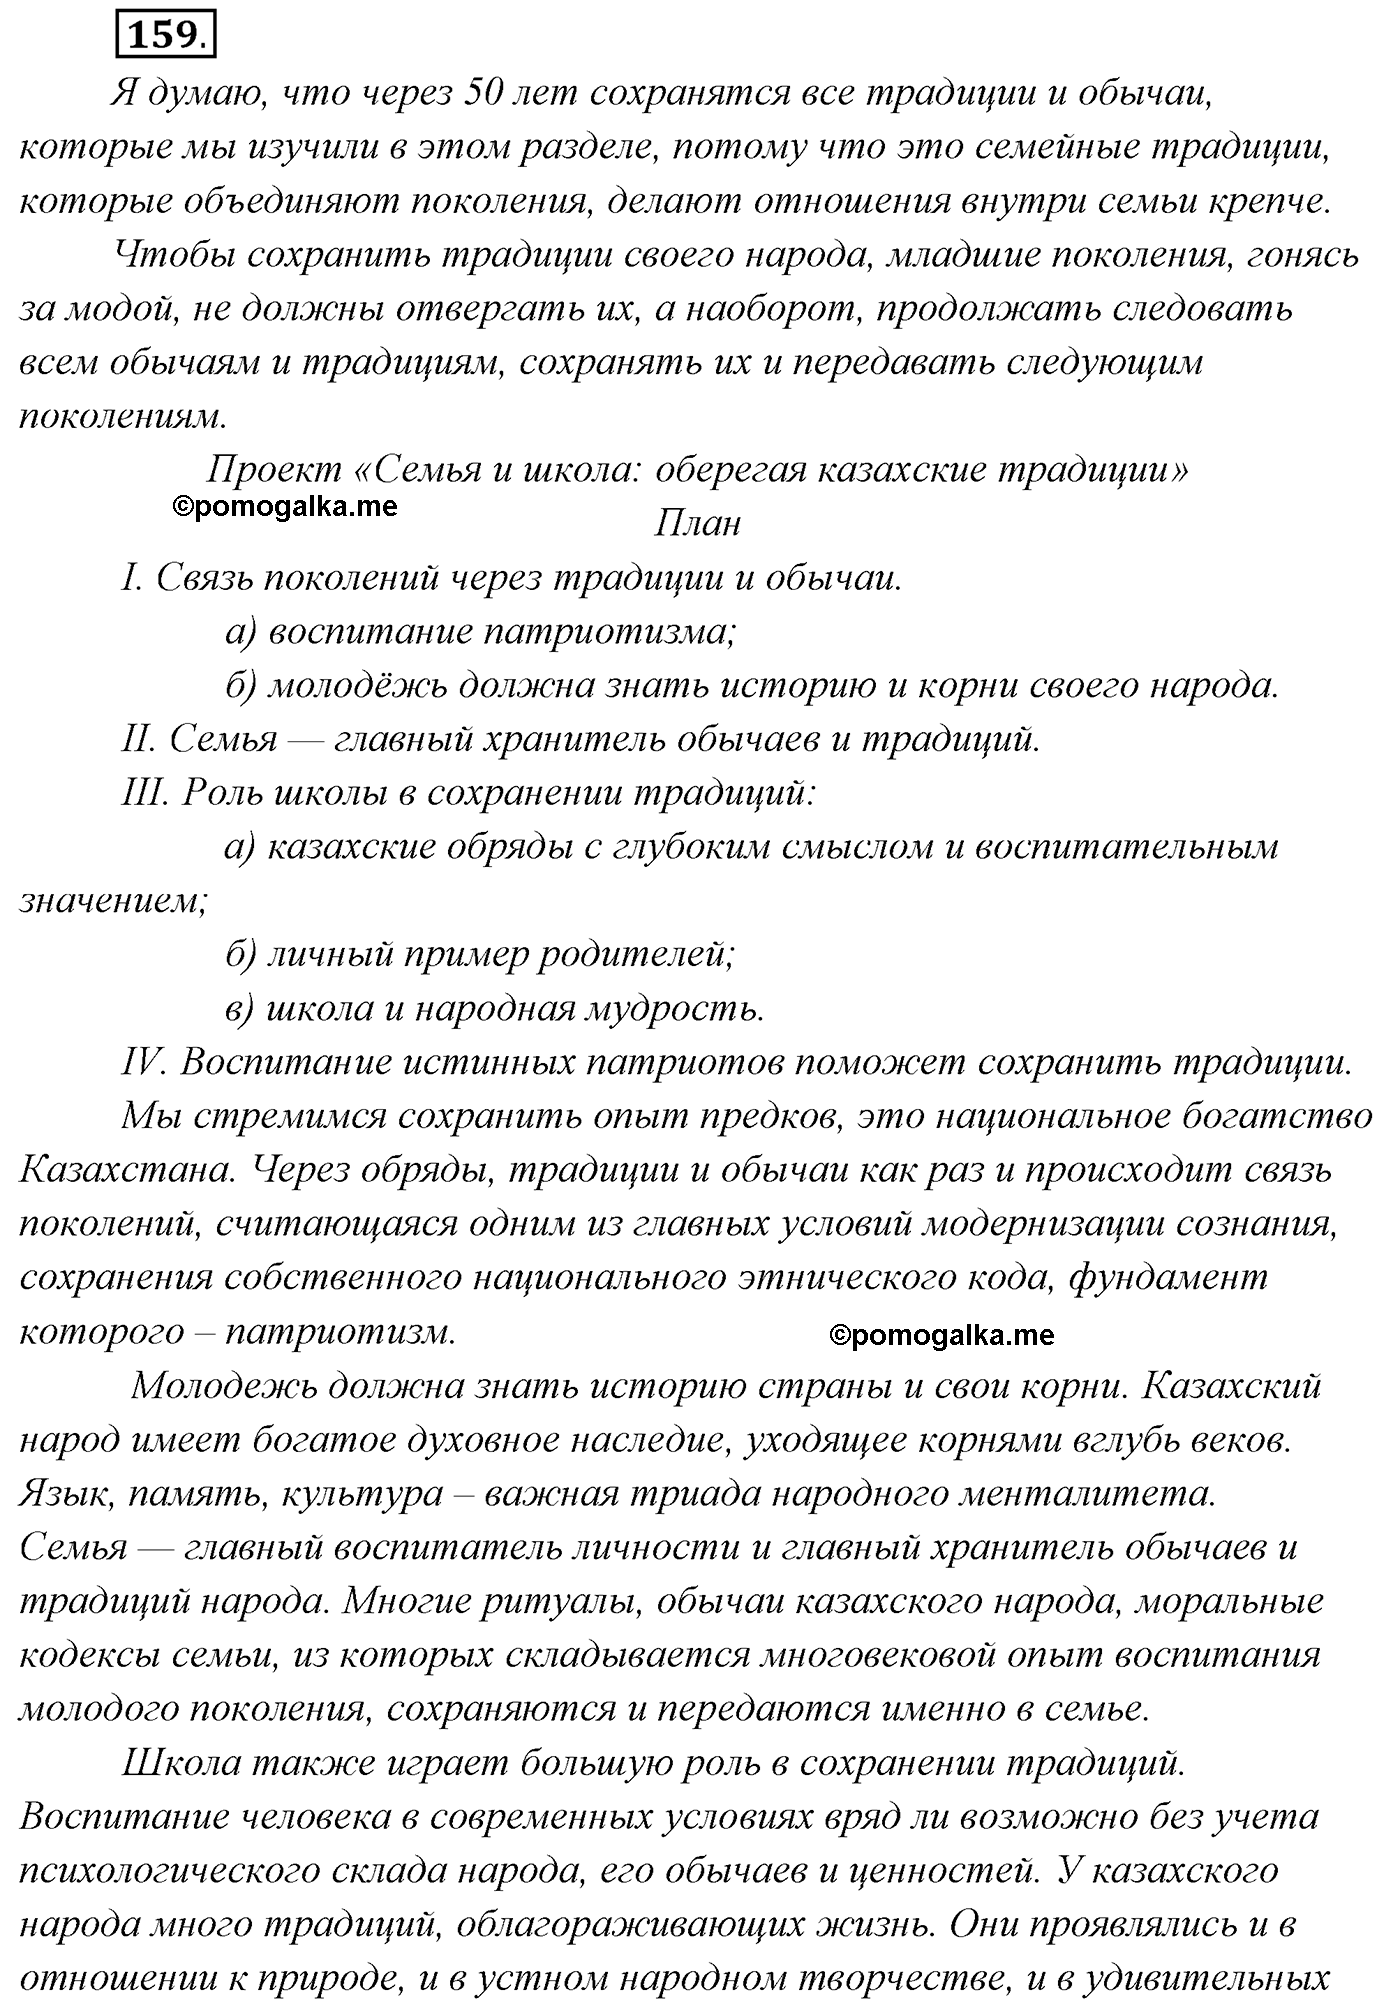 упражнение №159 русский язык 7 класс Сабитова, Скляренко